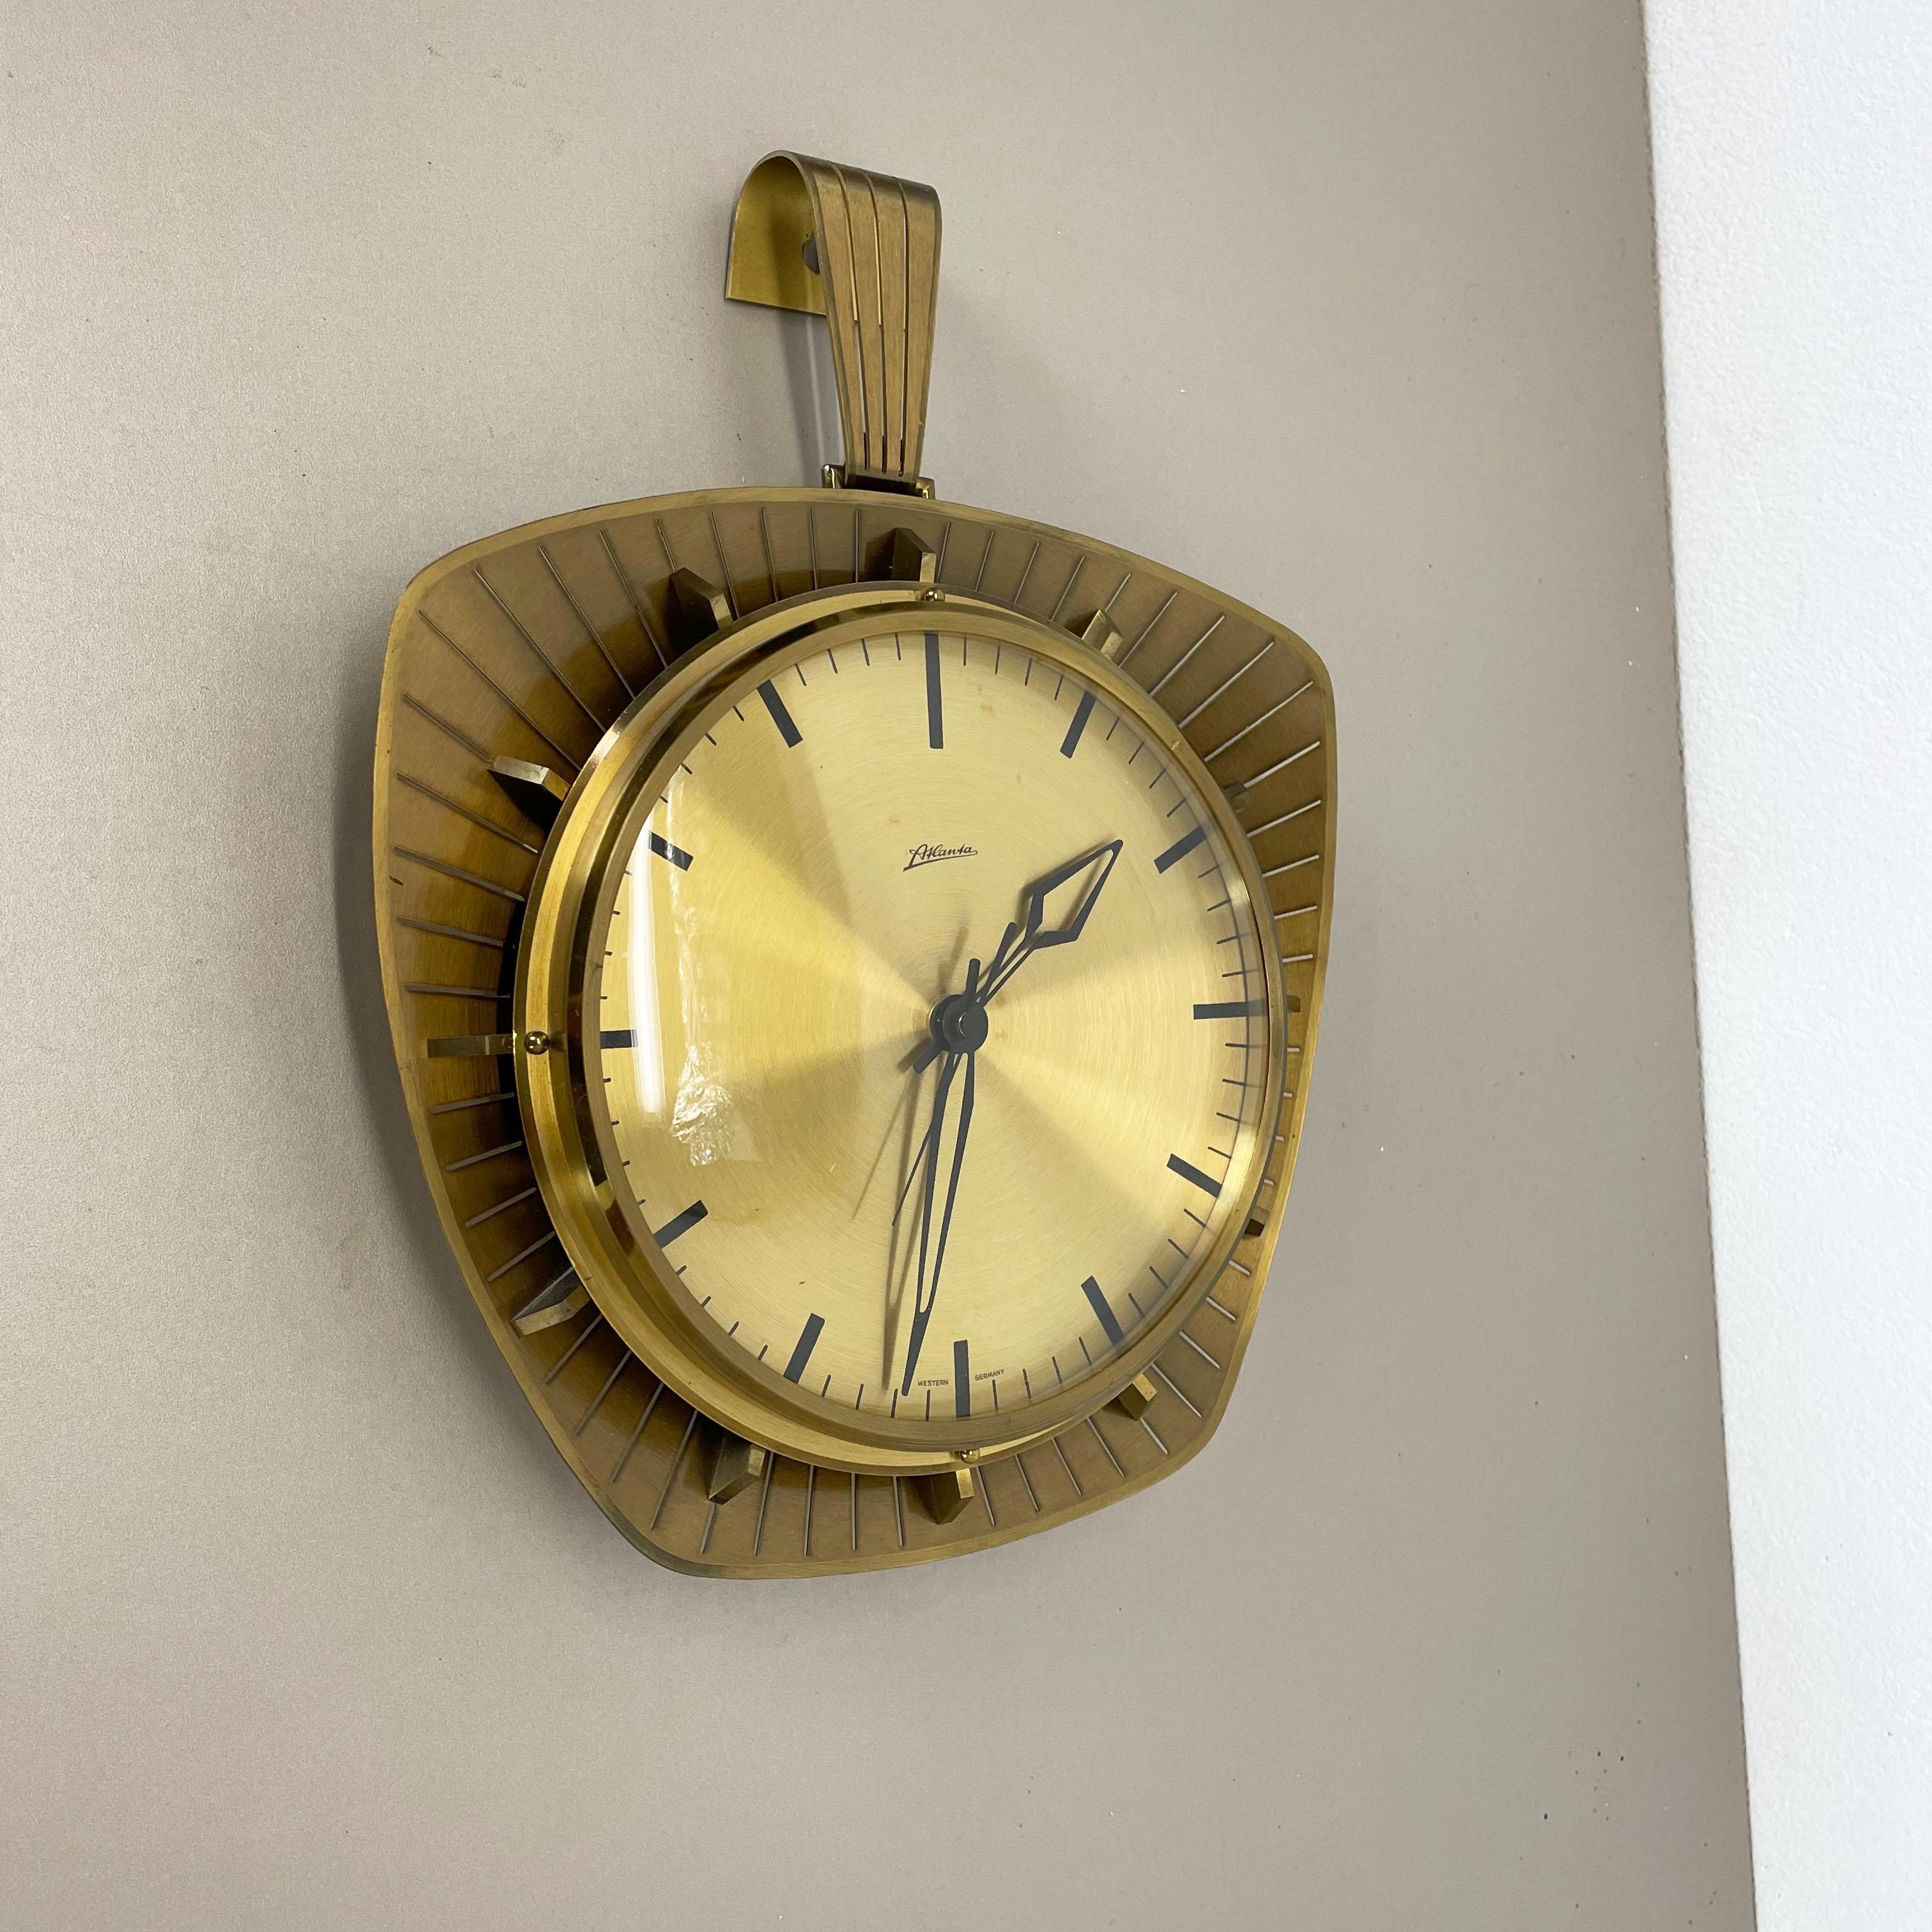 Article :

horloge murale



Origine :

Allemagne


Producteur :

Atlanta Electric, Allemagne


Âge :

1950s



Description :

Cette horloge murale vintage originale a été produite dans les années 1950 par le fabricant